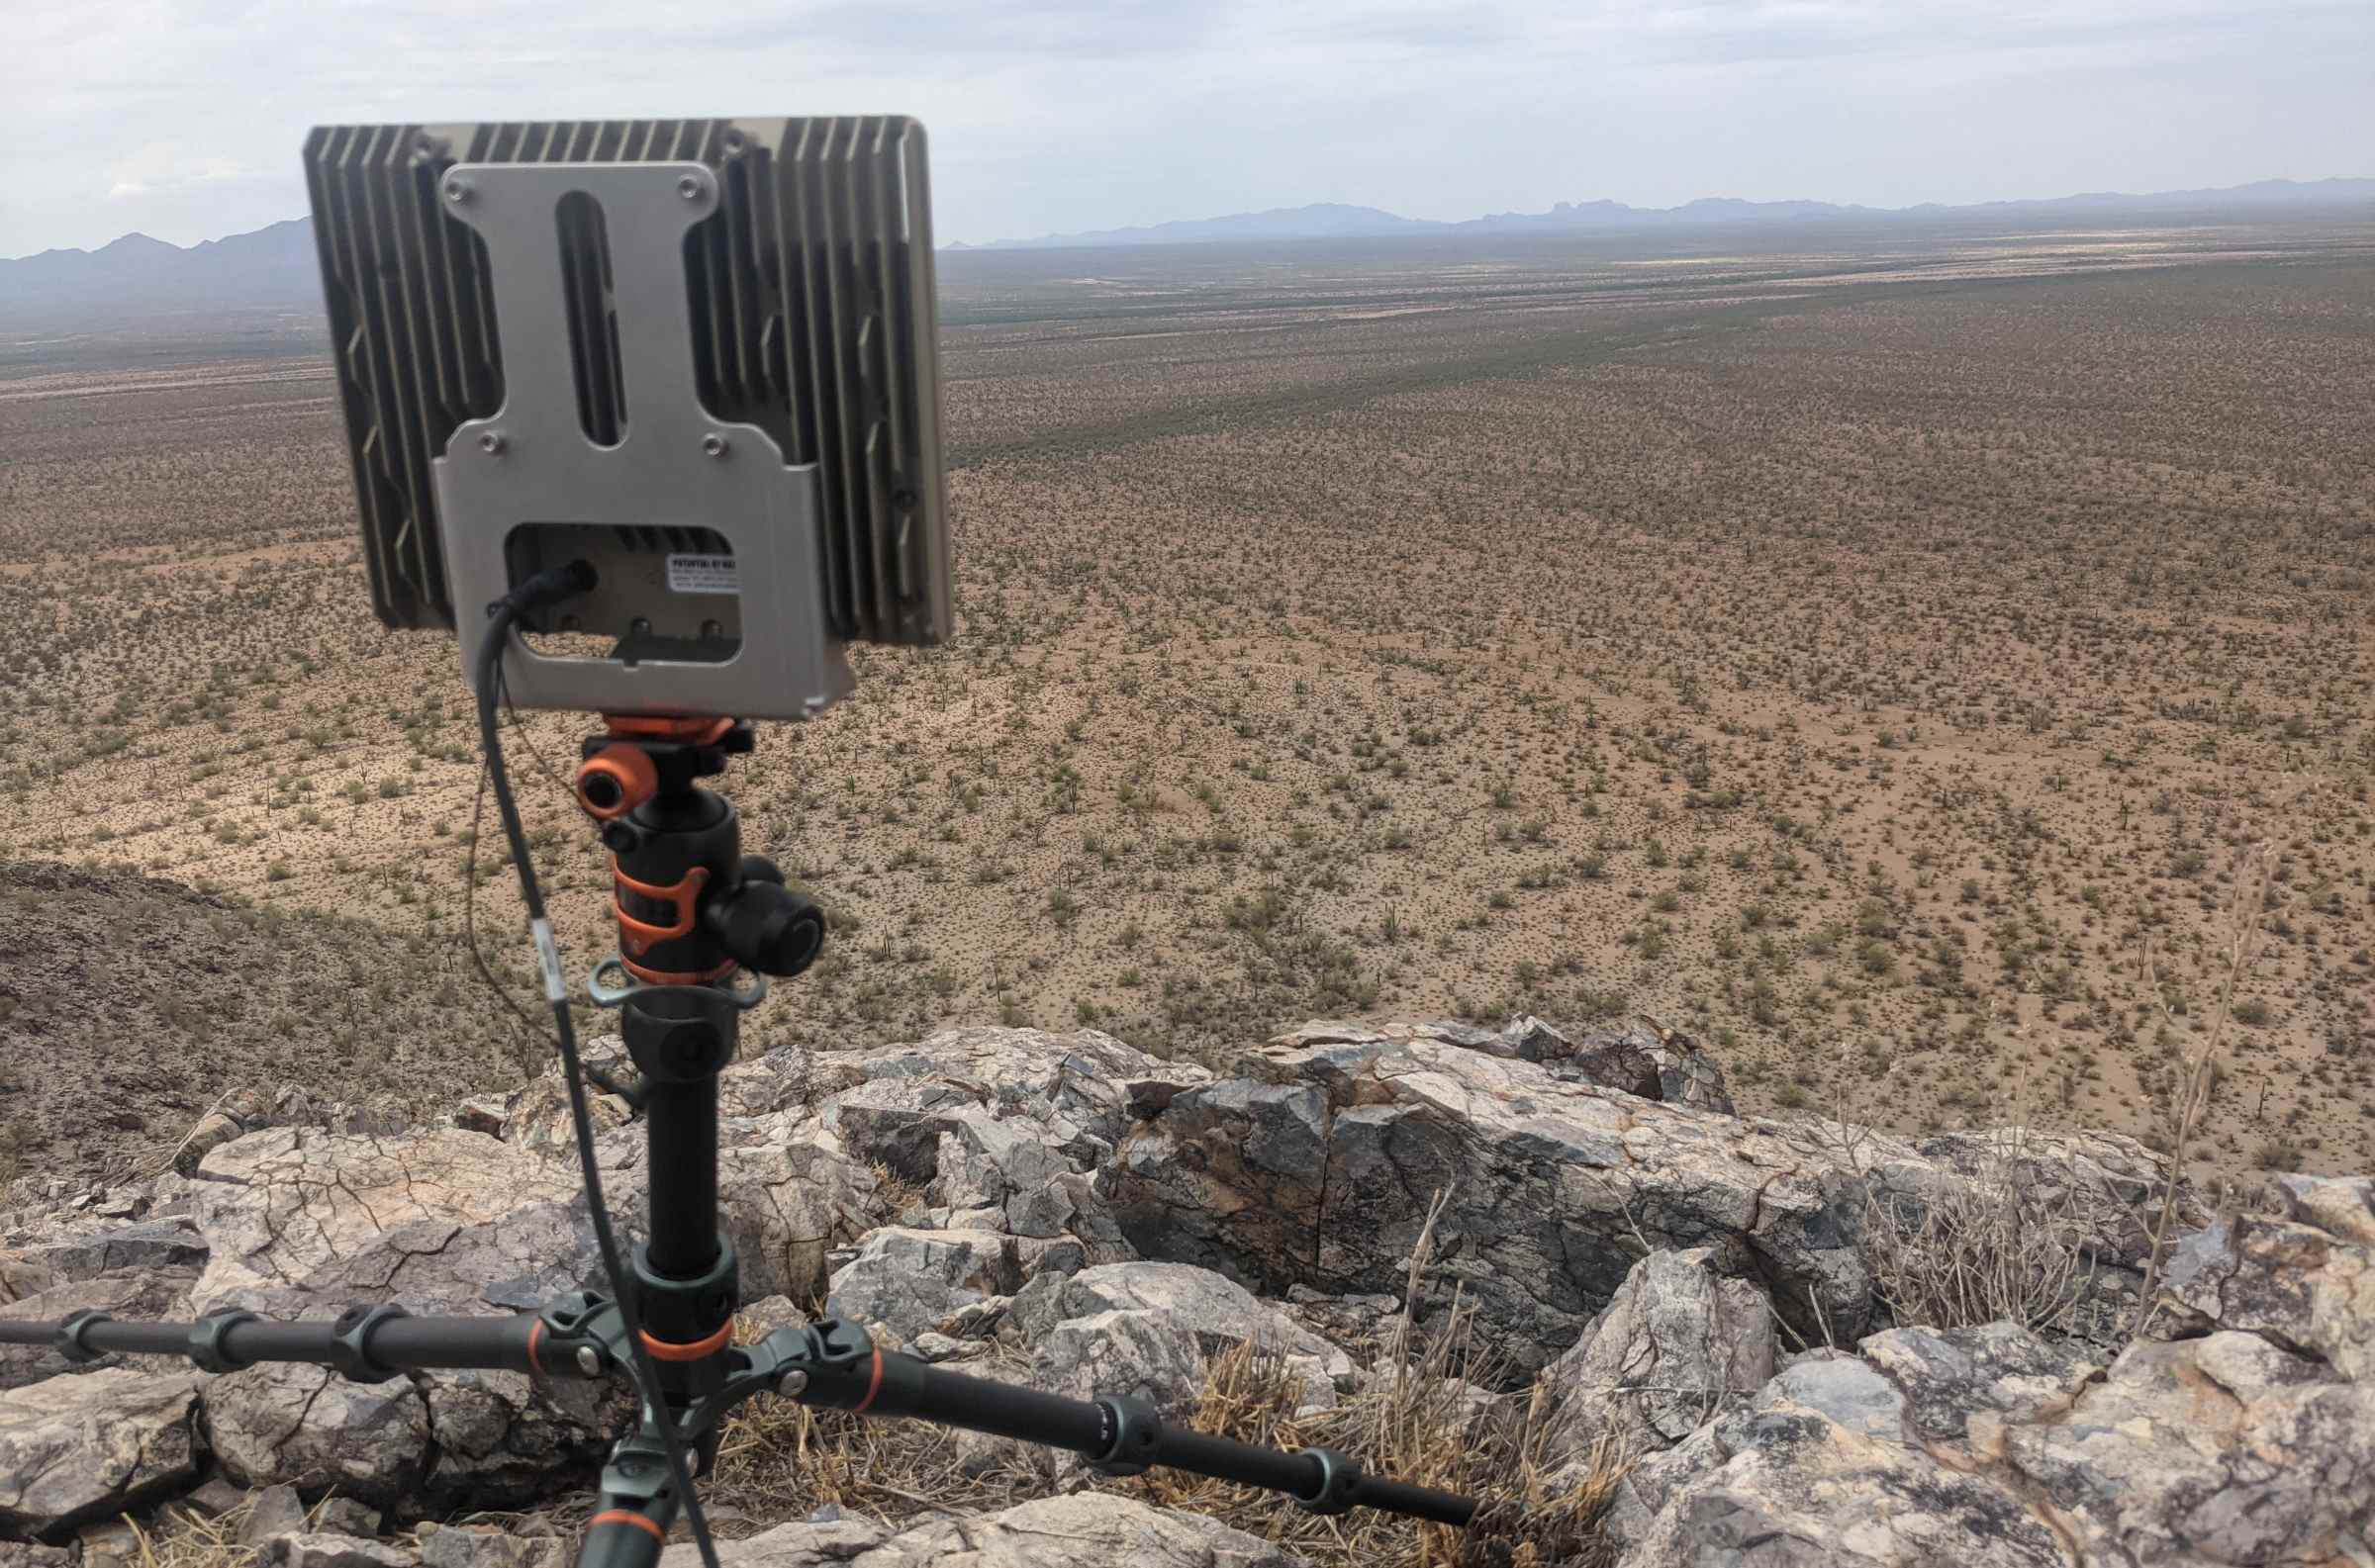 Un radar Echodyne sur un petit trépied surveillant une zone désertique.